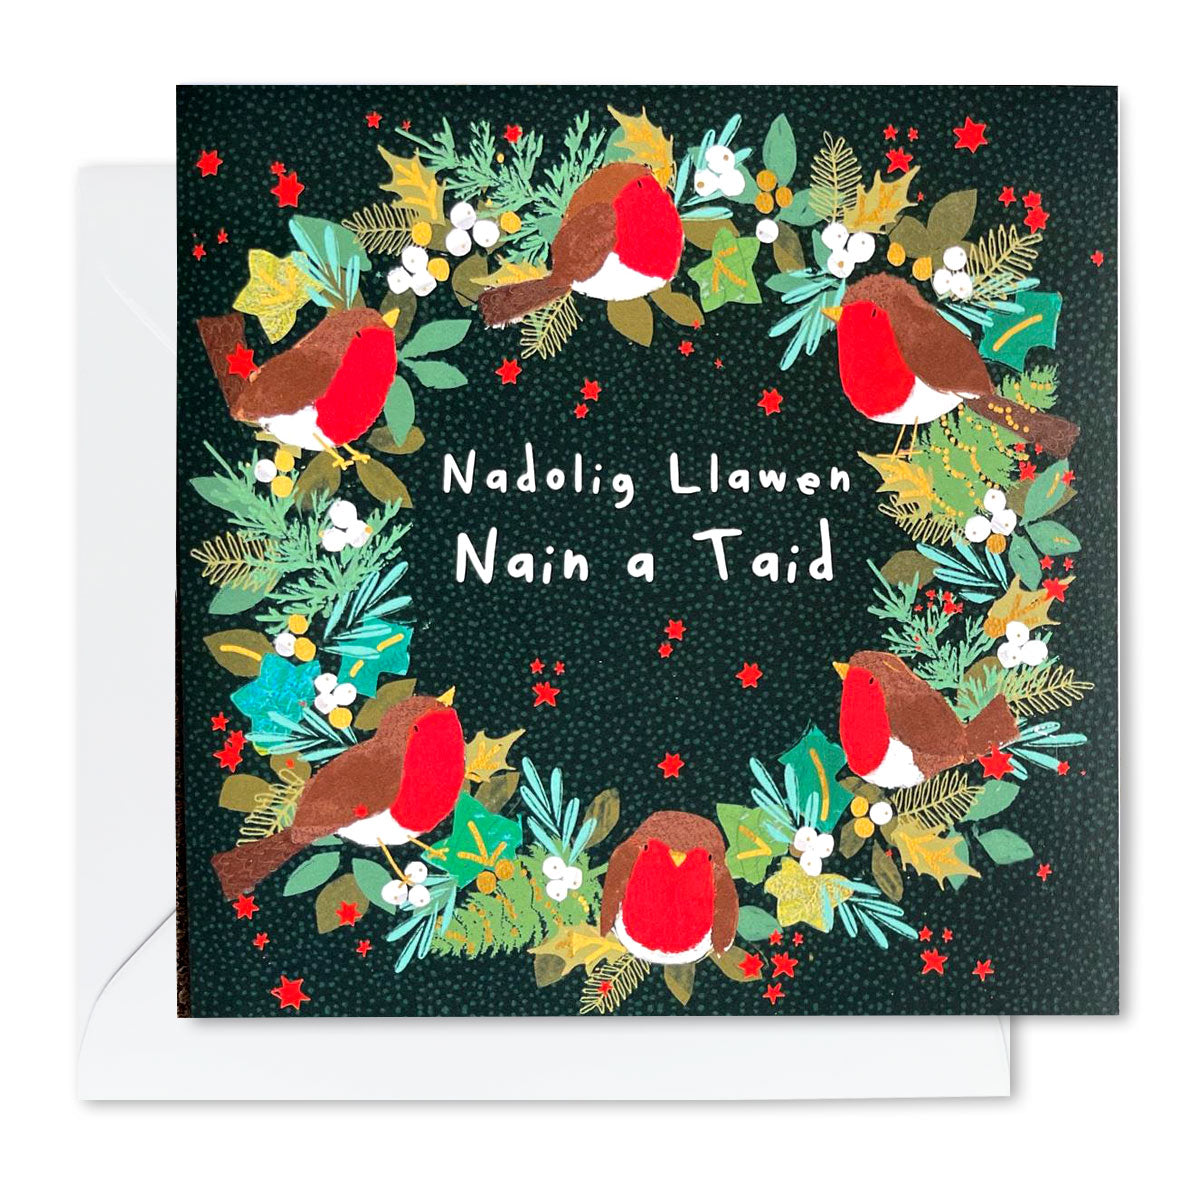 Nadolig Llawen Nain a Taid Wreath Card